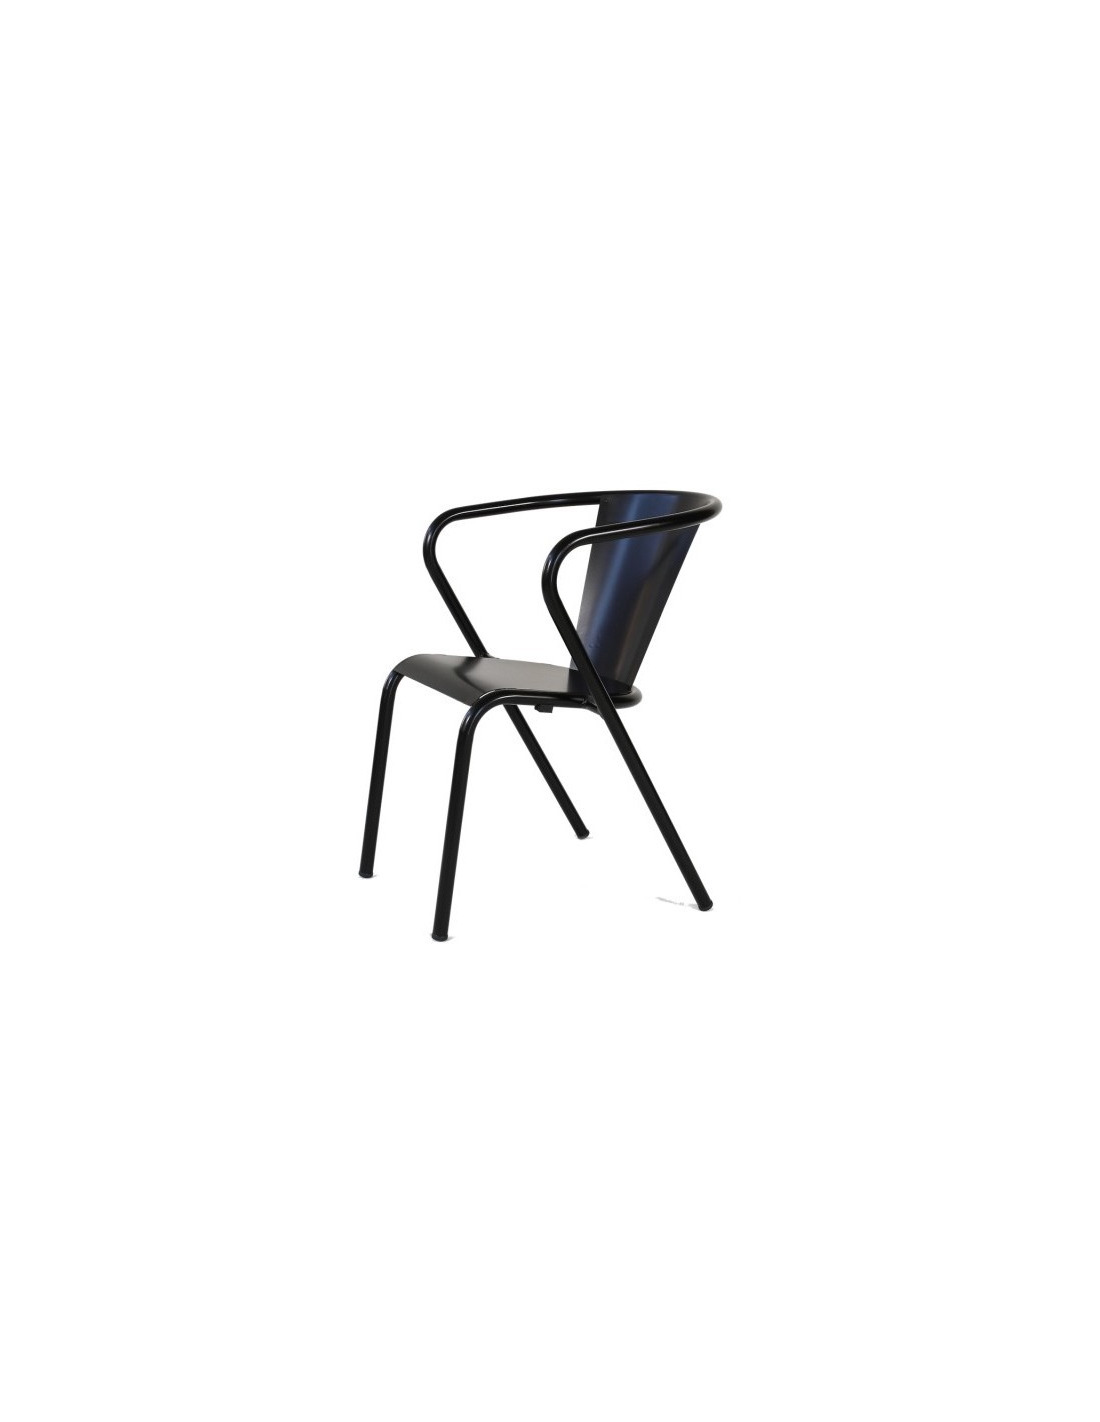 Chaise design BLOW - Chaise moderne noire en matière plastique